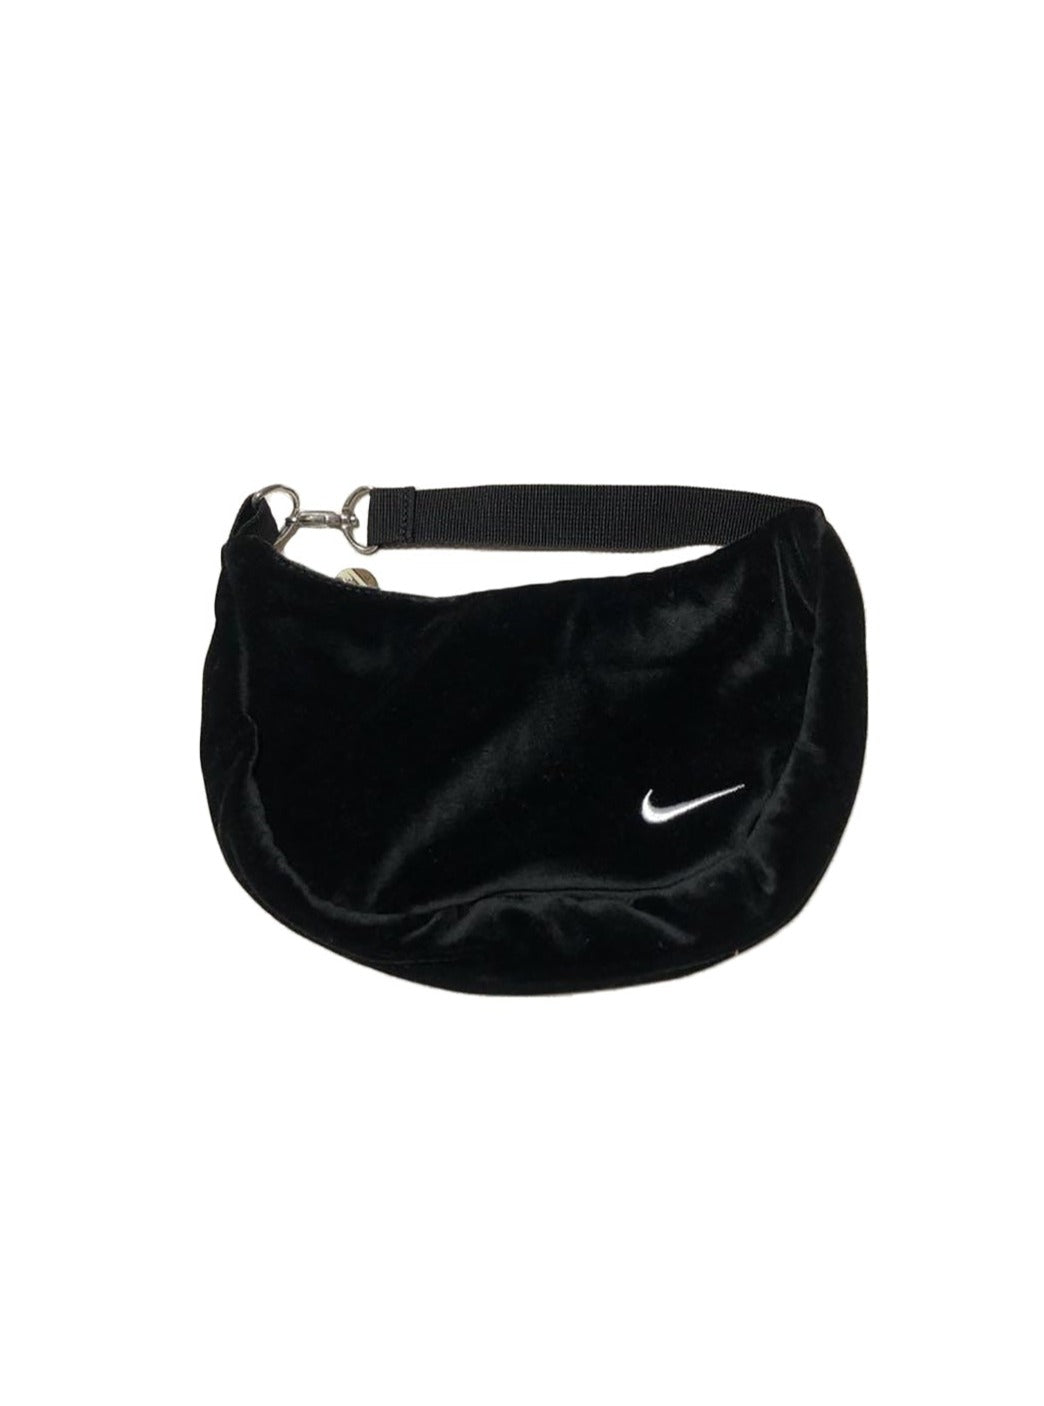 Nike Rare Black Velvet Handbag